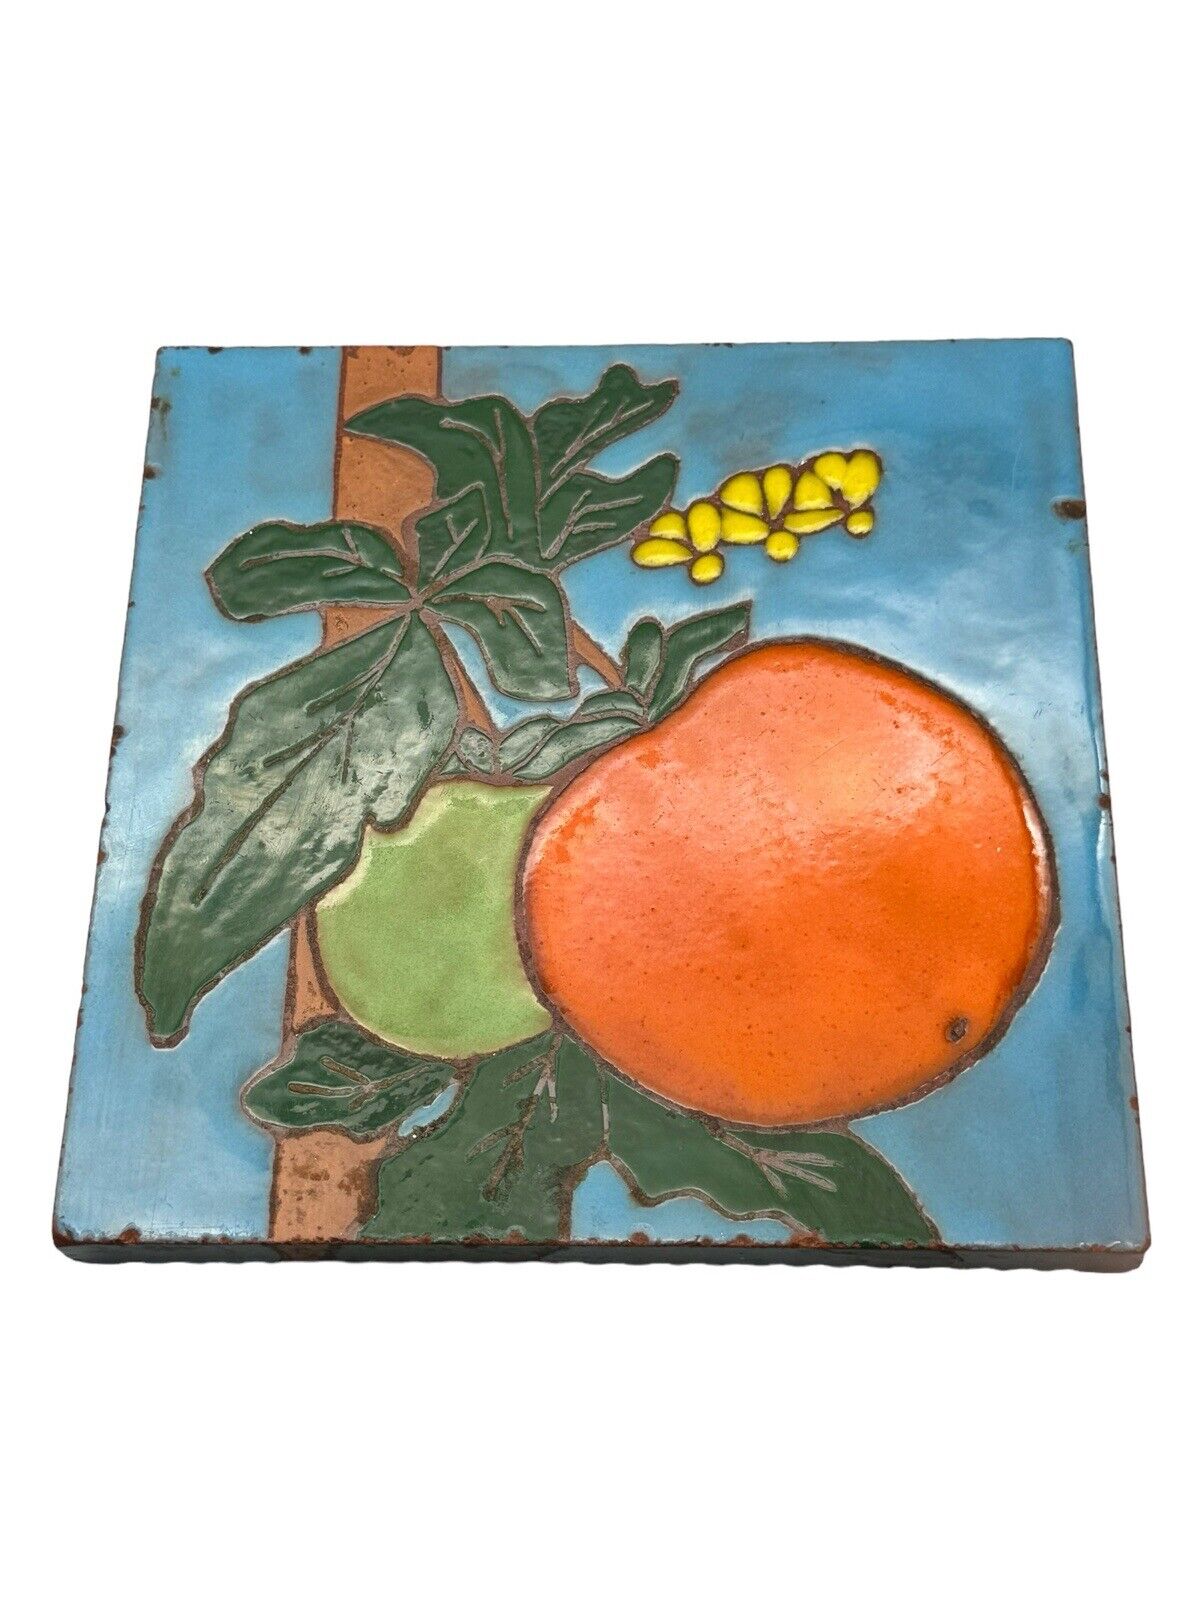 Murray Quarries Art Tile Trivet Blue Orange Fruit Made in USA Vintage 6\